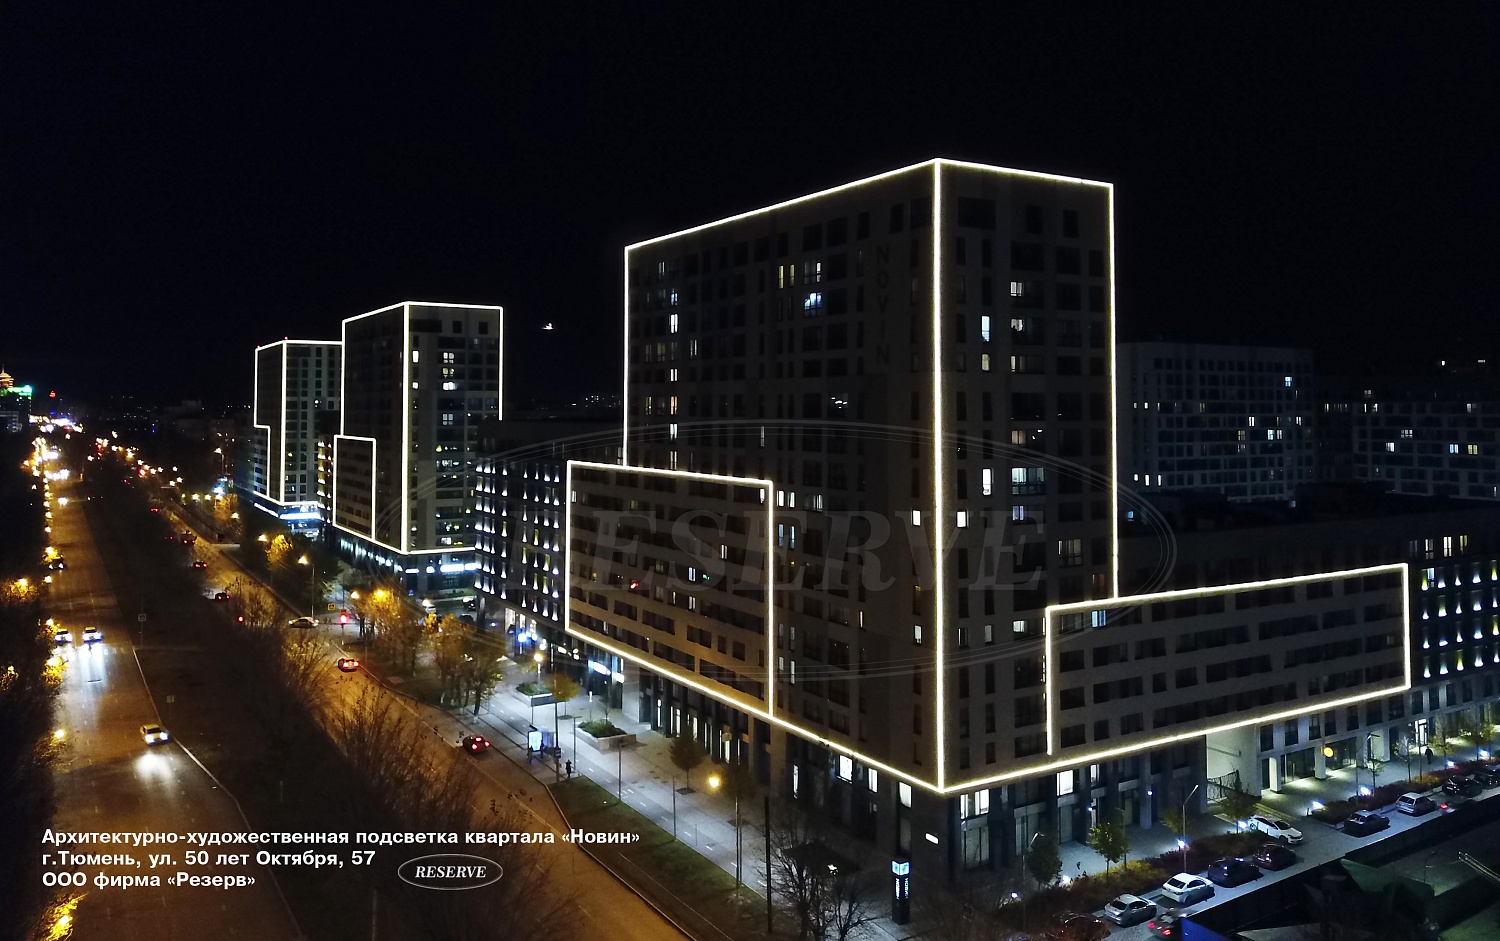 Завершена реализация проекта по архитектурно-художественной подсветке и монтажу лайтбоксов квартала "Новин" (3-я очередь строительства)